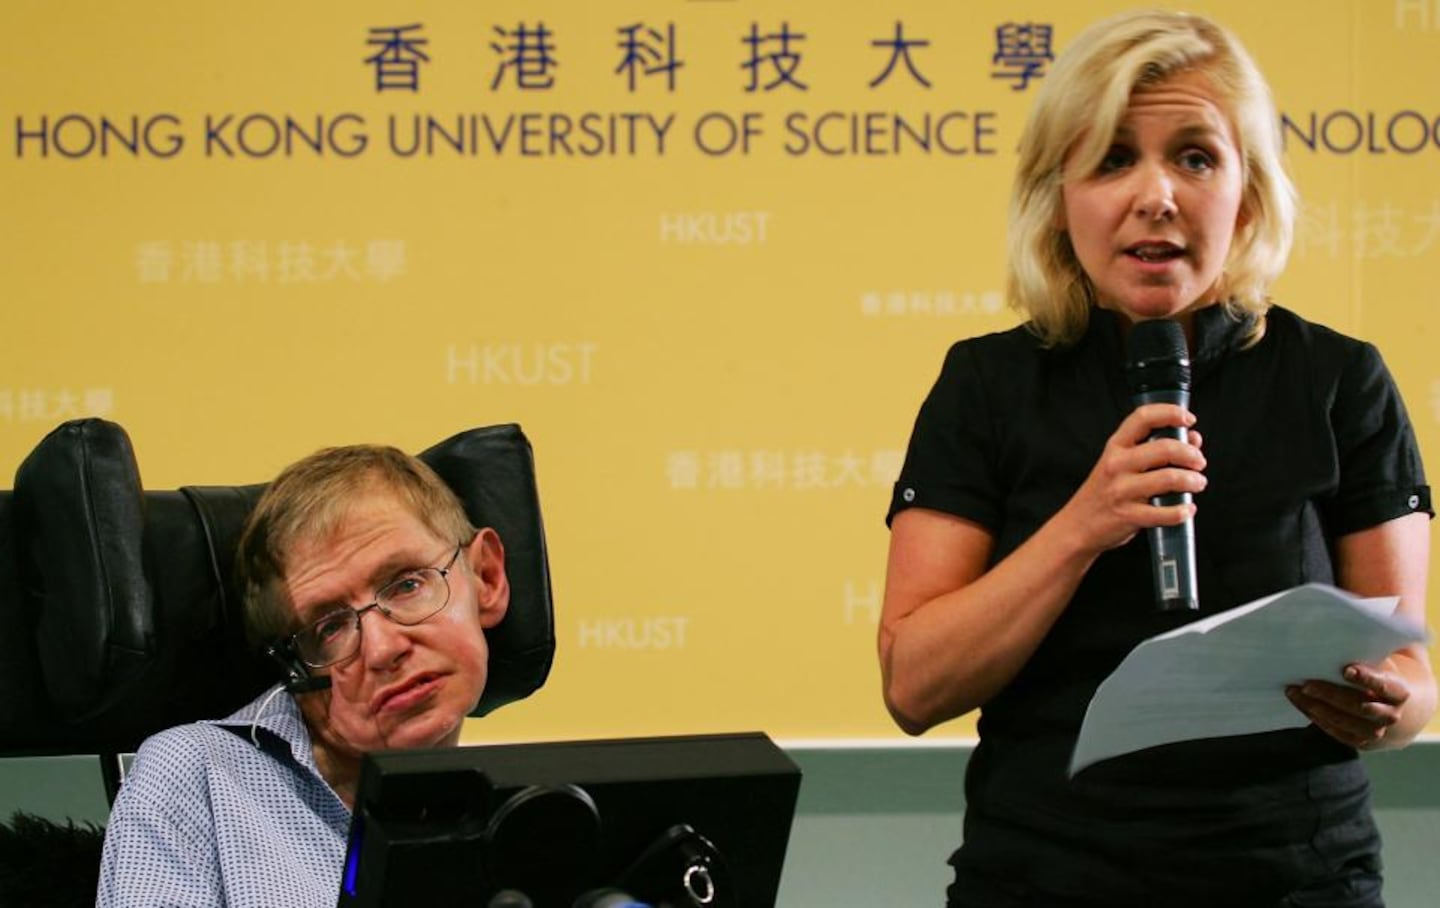 Los hijos de Stephen Hawking: su madre siempre les hizo saber que su padre los amaba